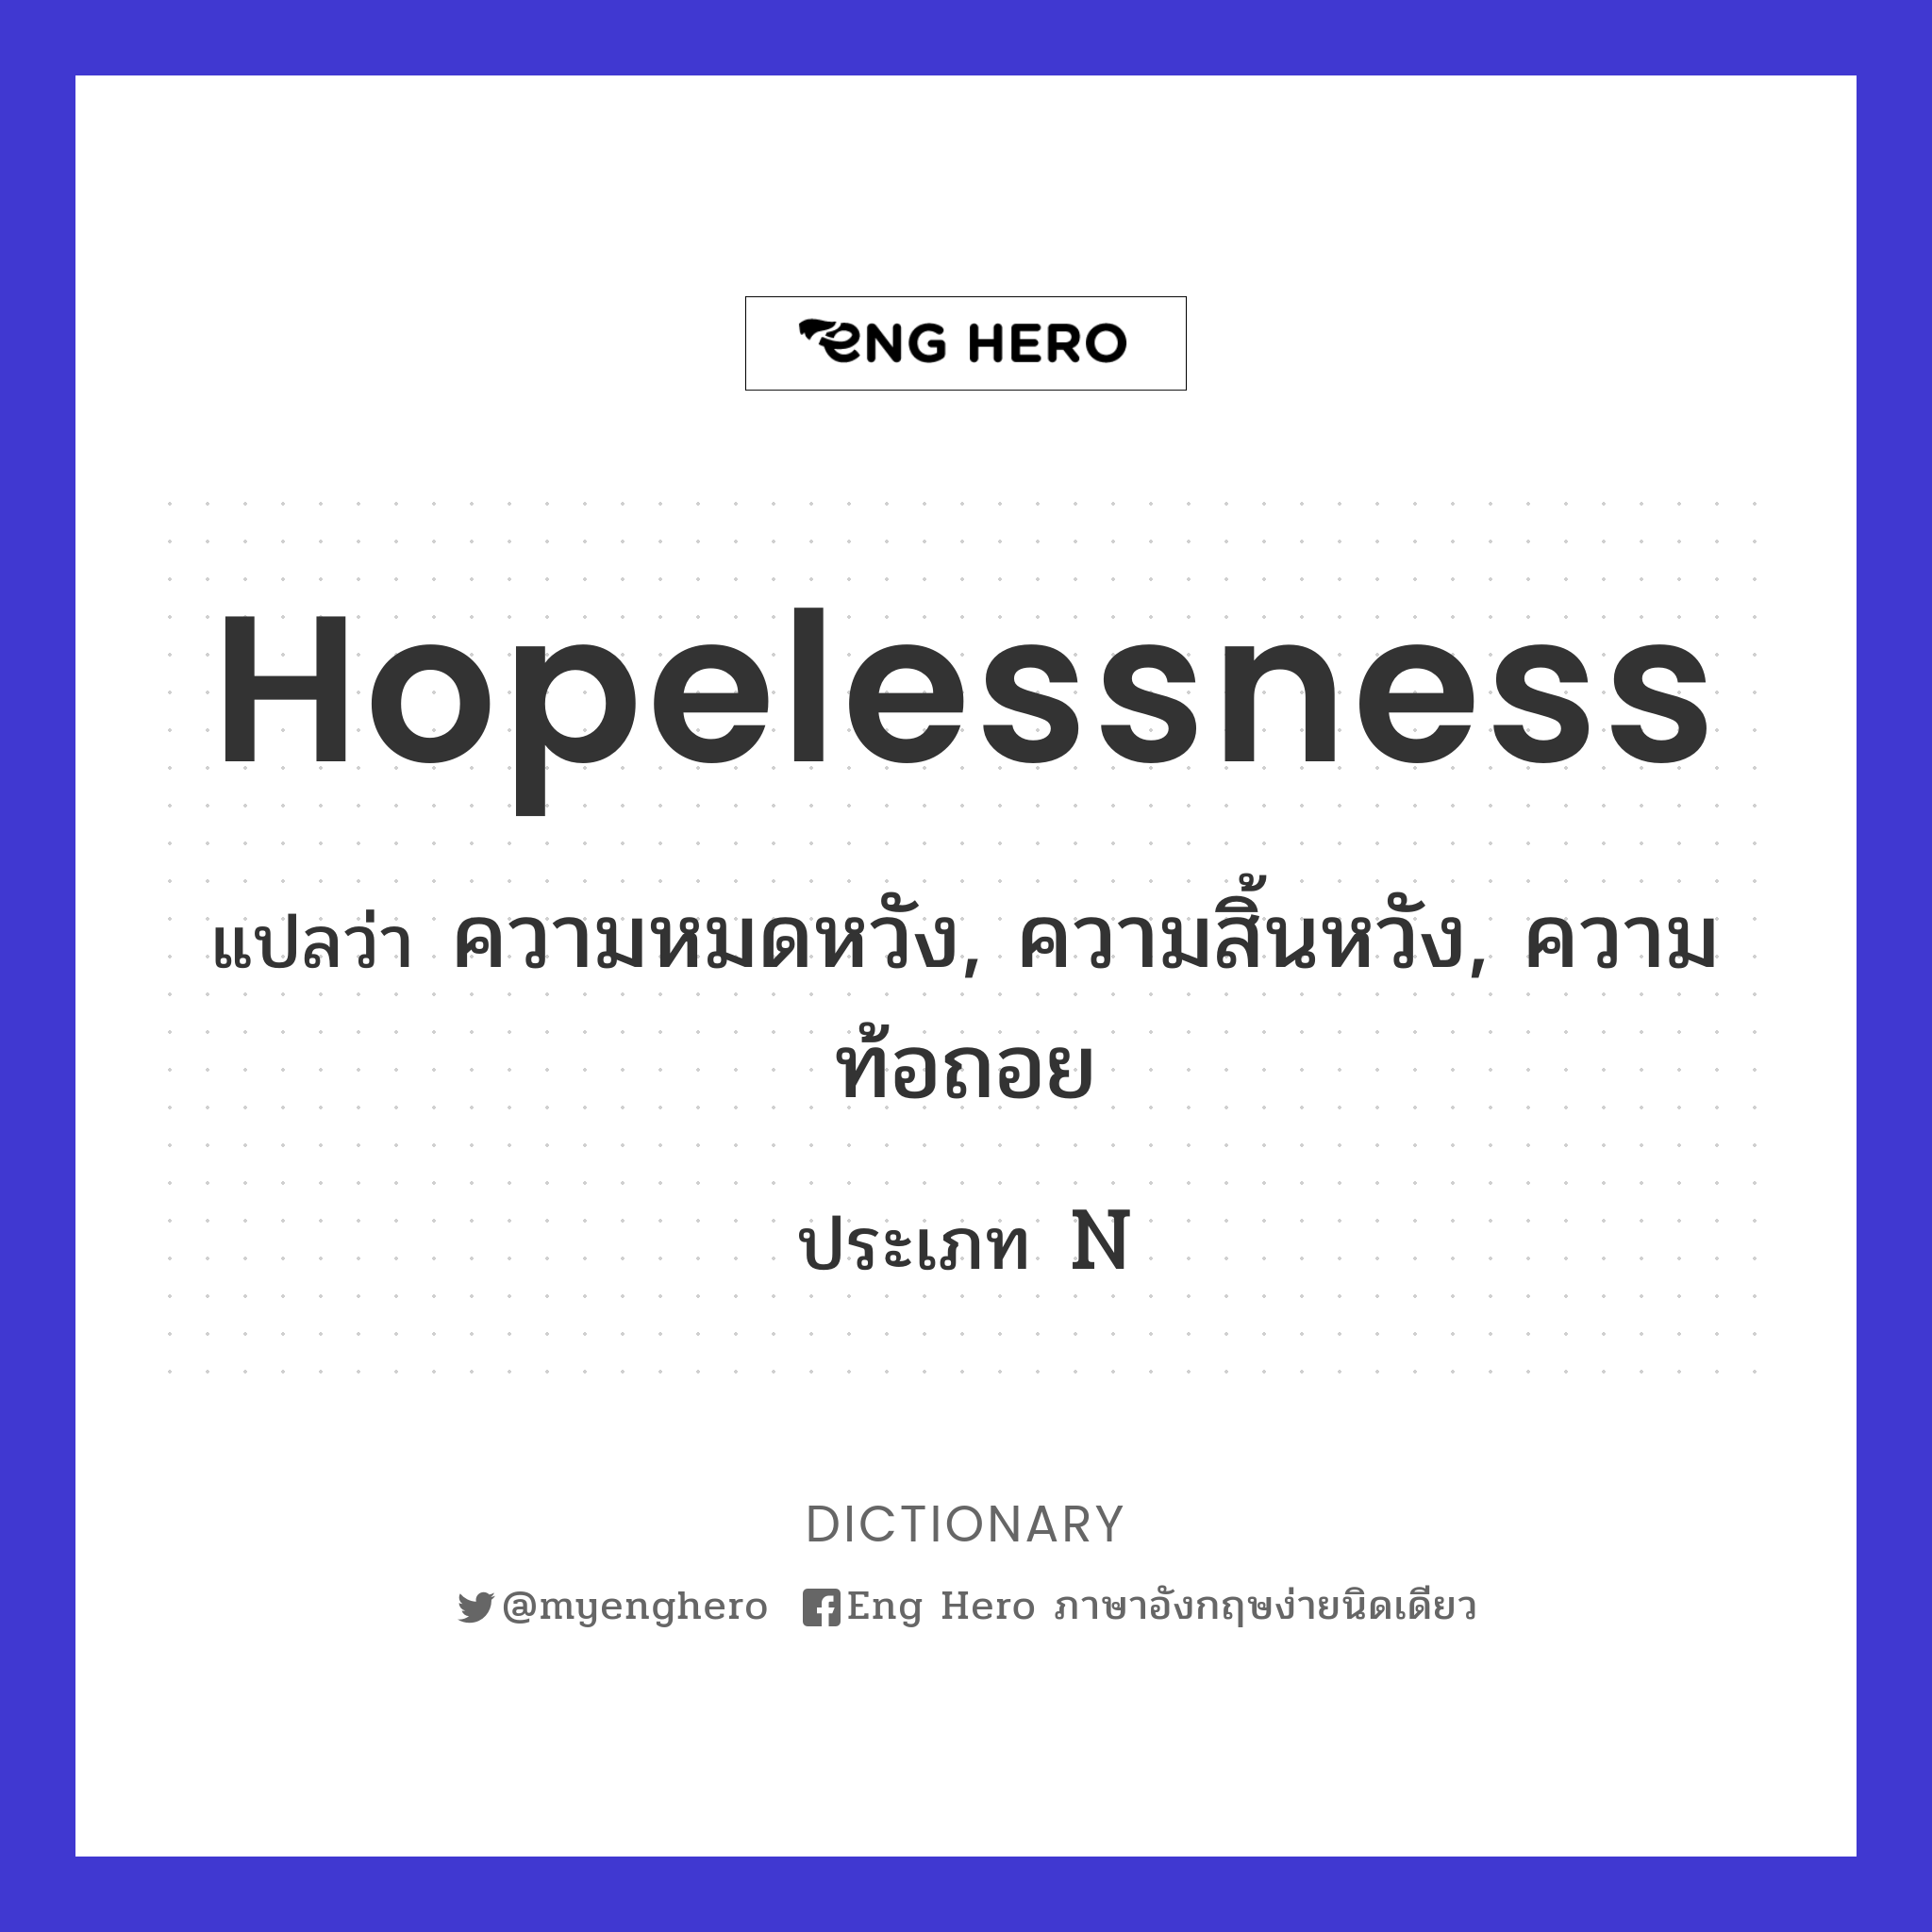 hopelessness